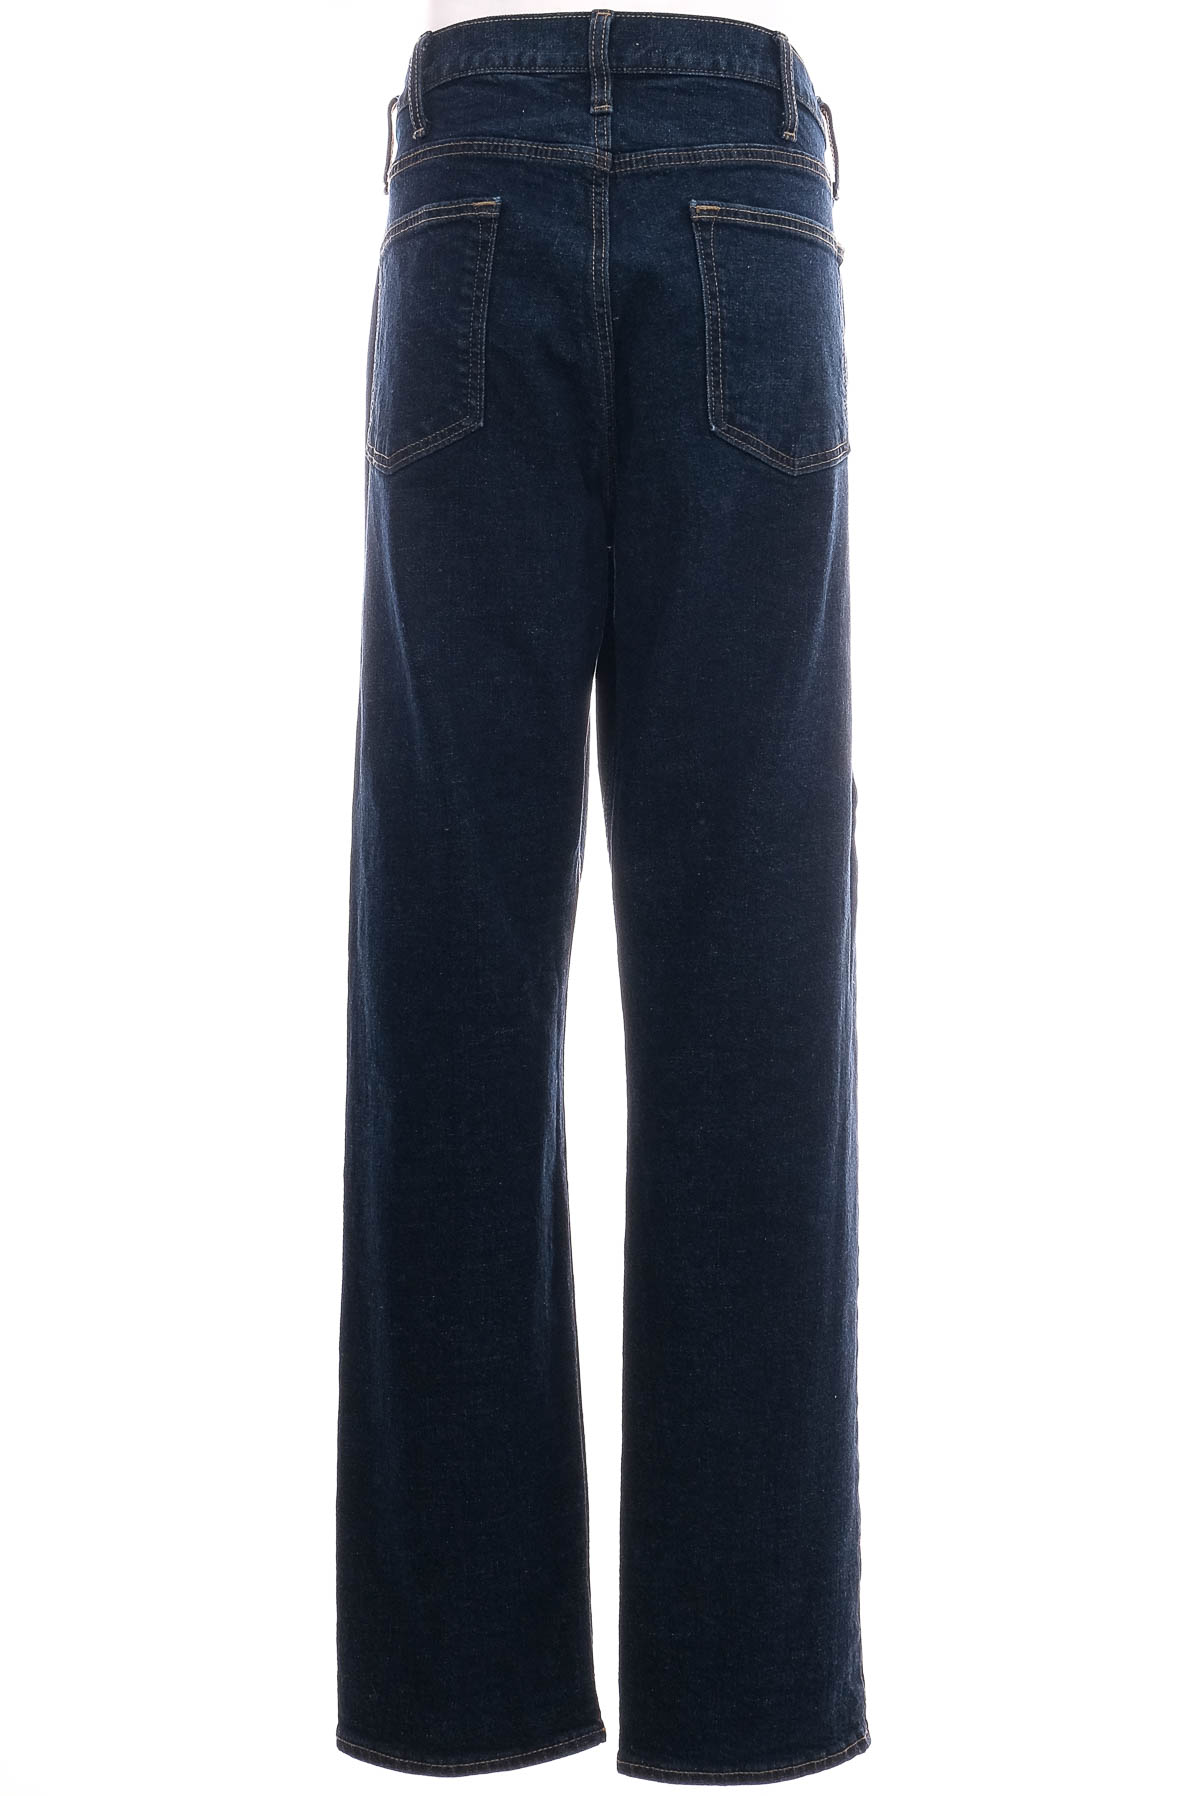 Jeans pentru bărbăți - OLD NAVY - 1